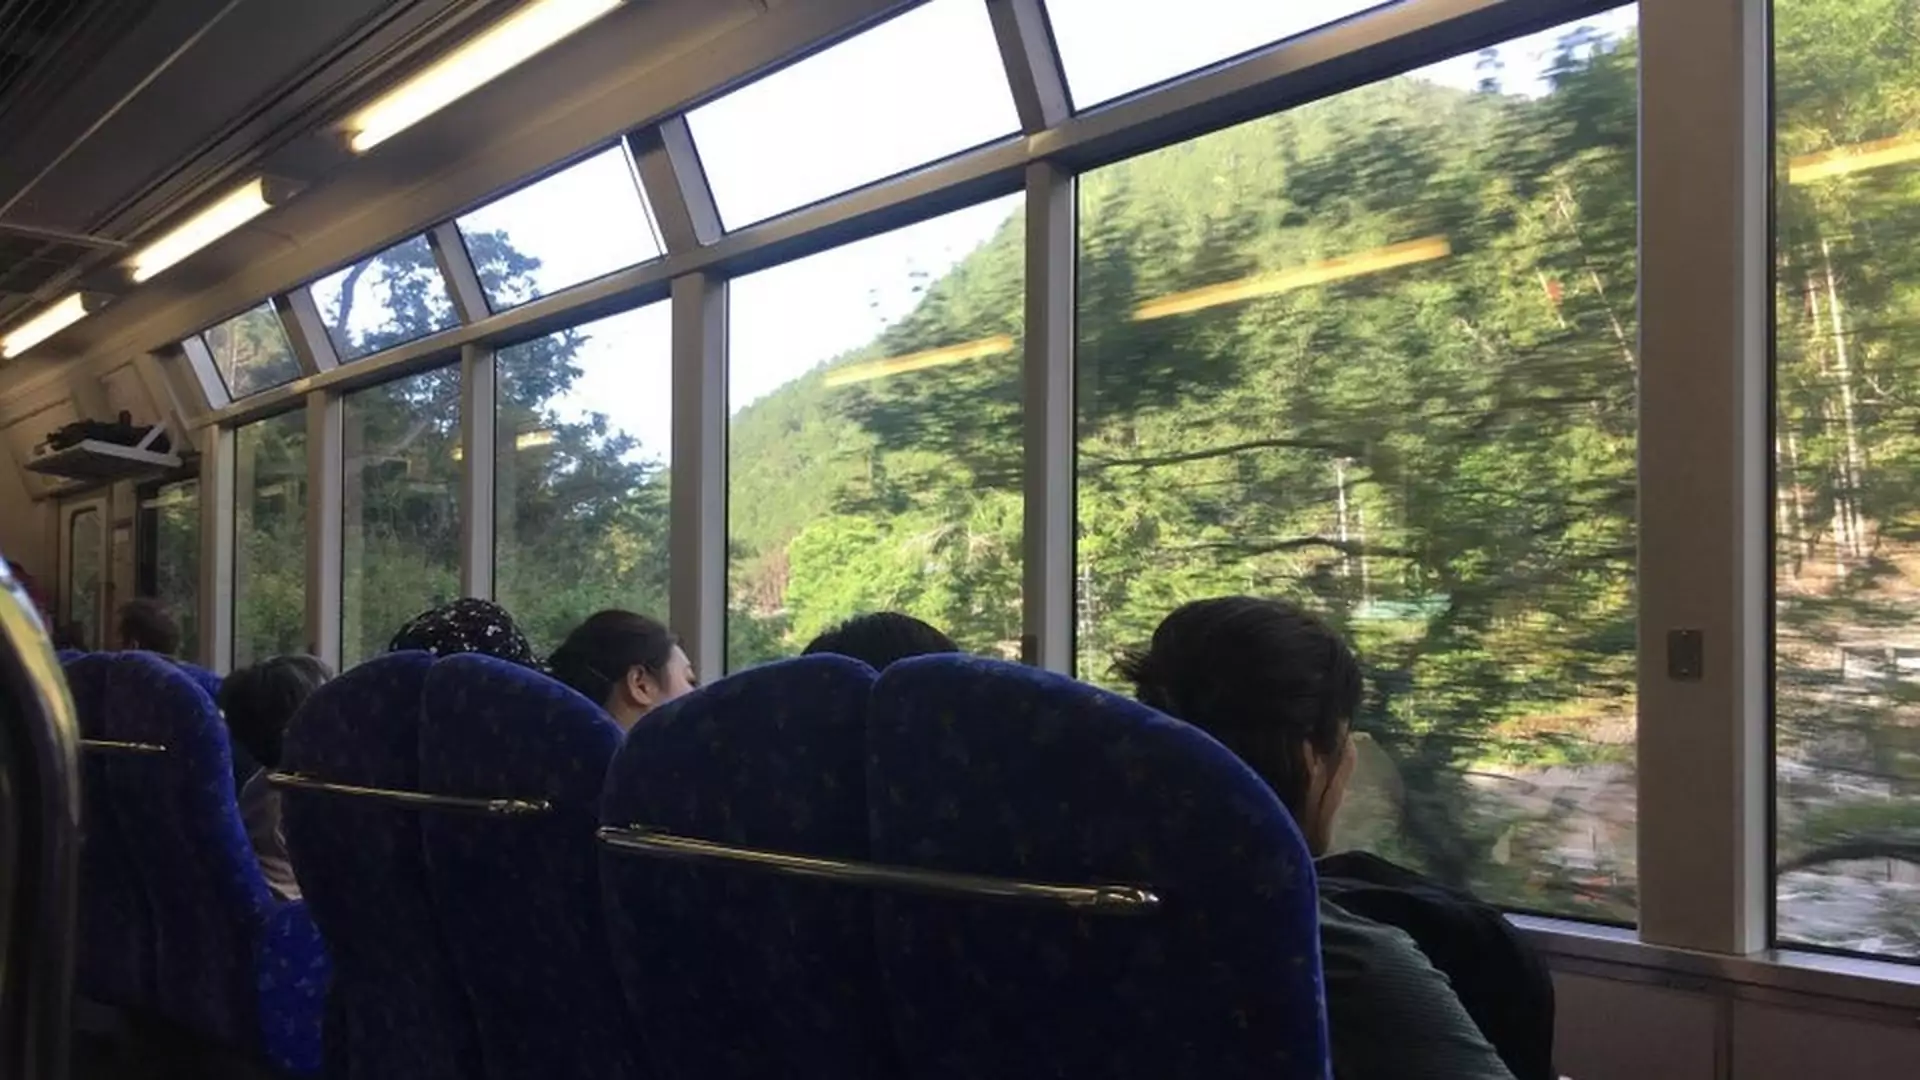 Pociąg z siedzeniami zwróconymi w stronę okien stał się viralem. Wiemy, gdzie jeździ